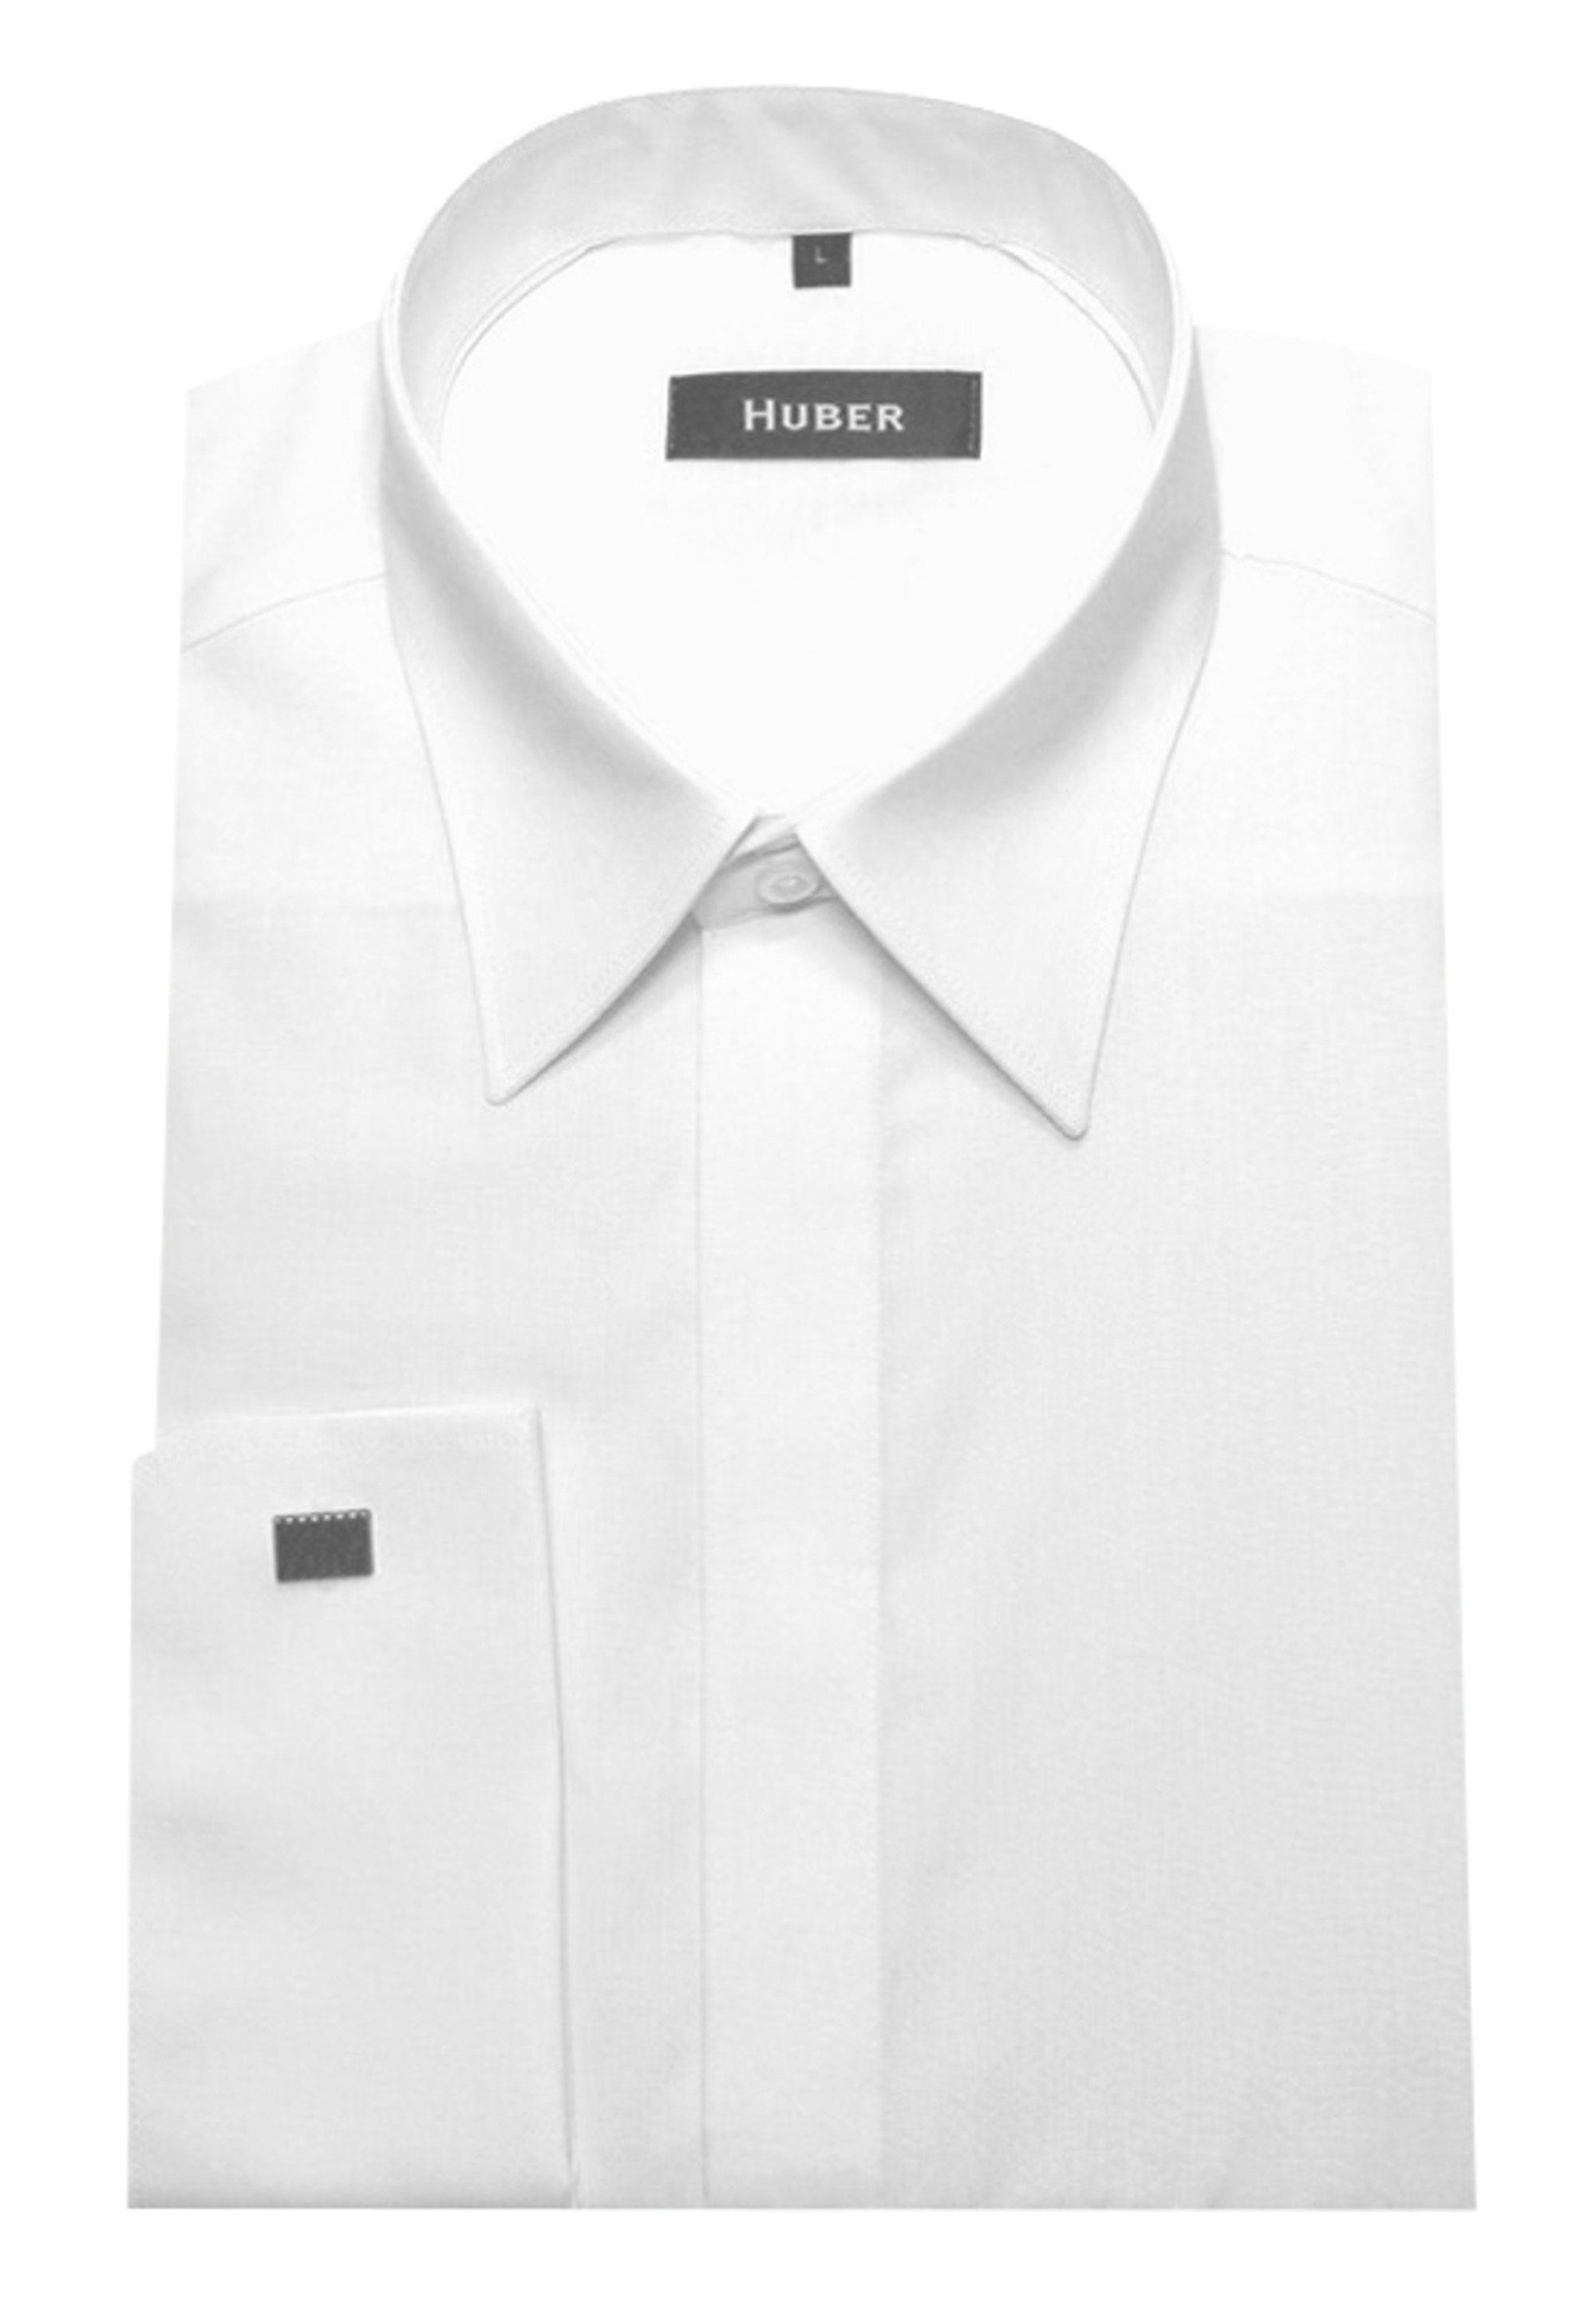 Günstiger Verkaufsstart Huber Hemden Langarmhemd weiß HU-0011 Umschlag-Manschetten Schnitt Knopfleiste verdeckte Regular Fit-gerader